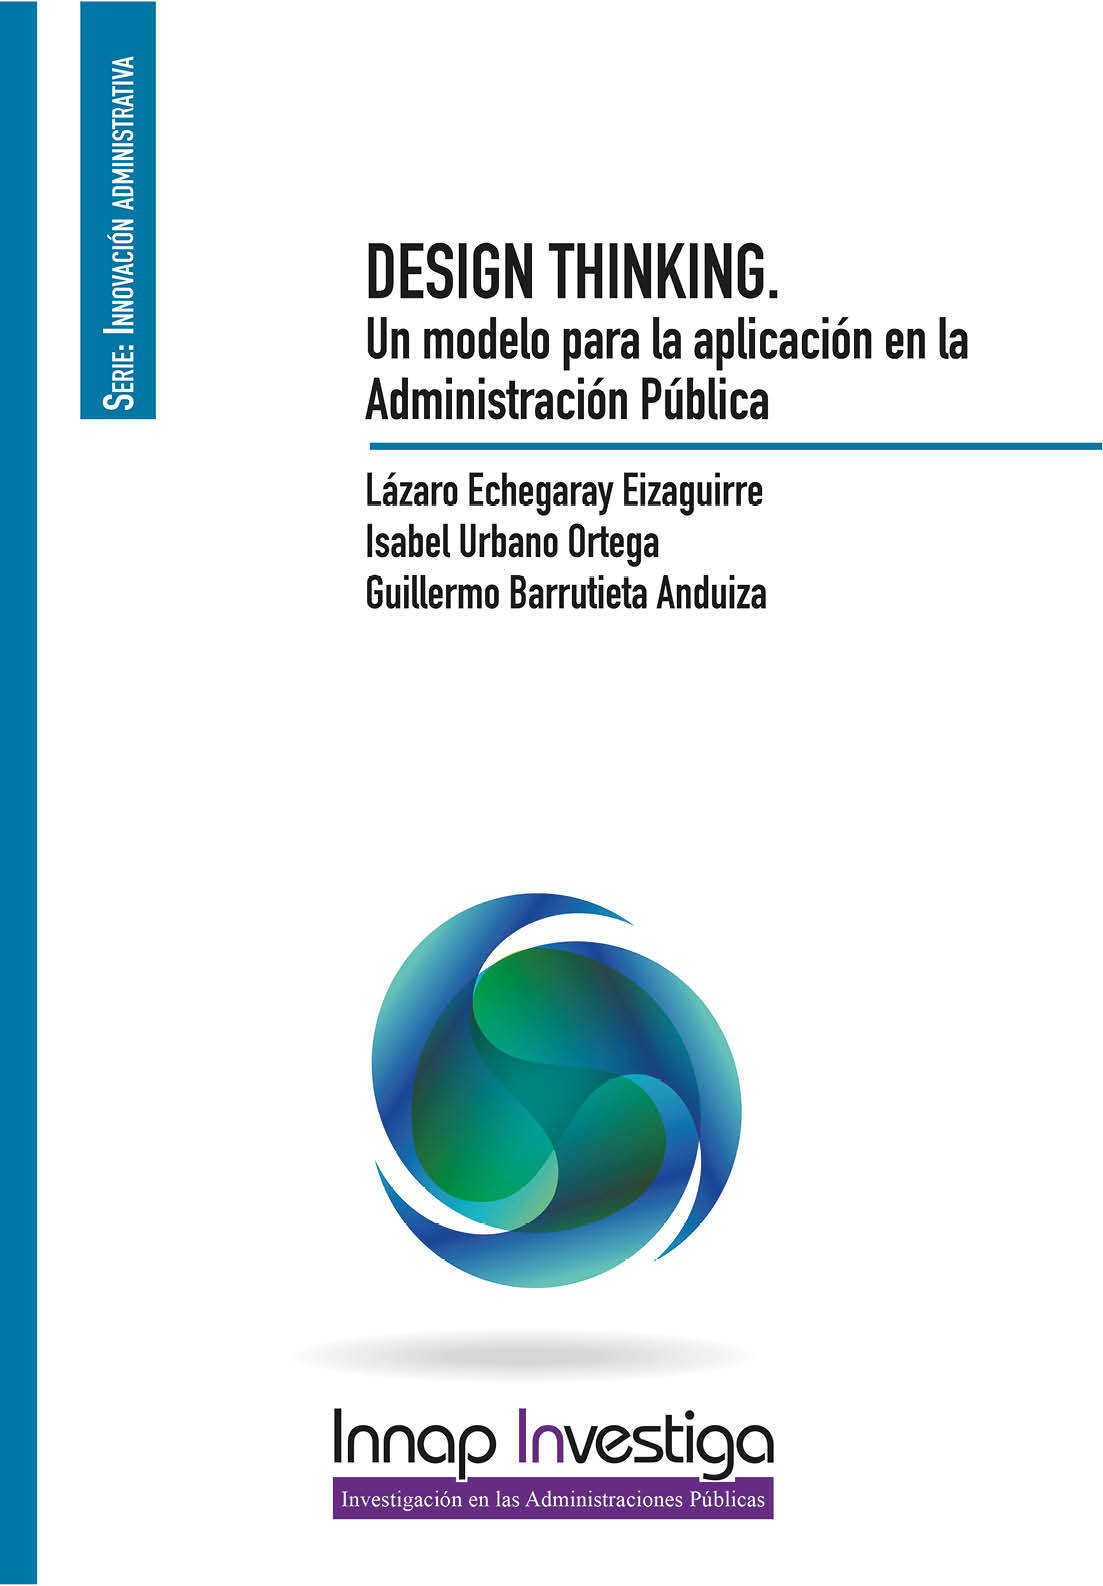 Desing Thinking. Un modelo para la aplicación en la Administración Pública 